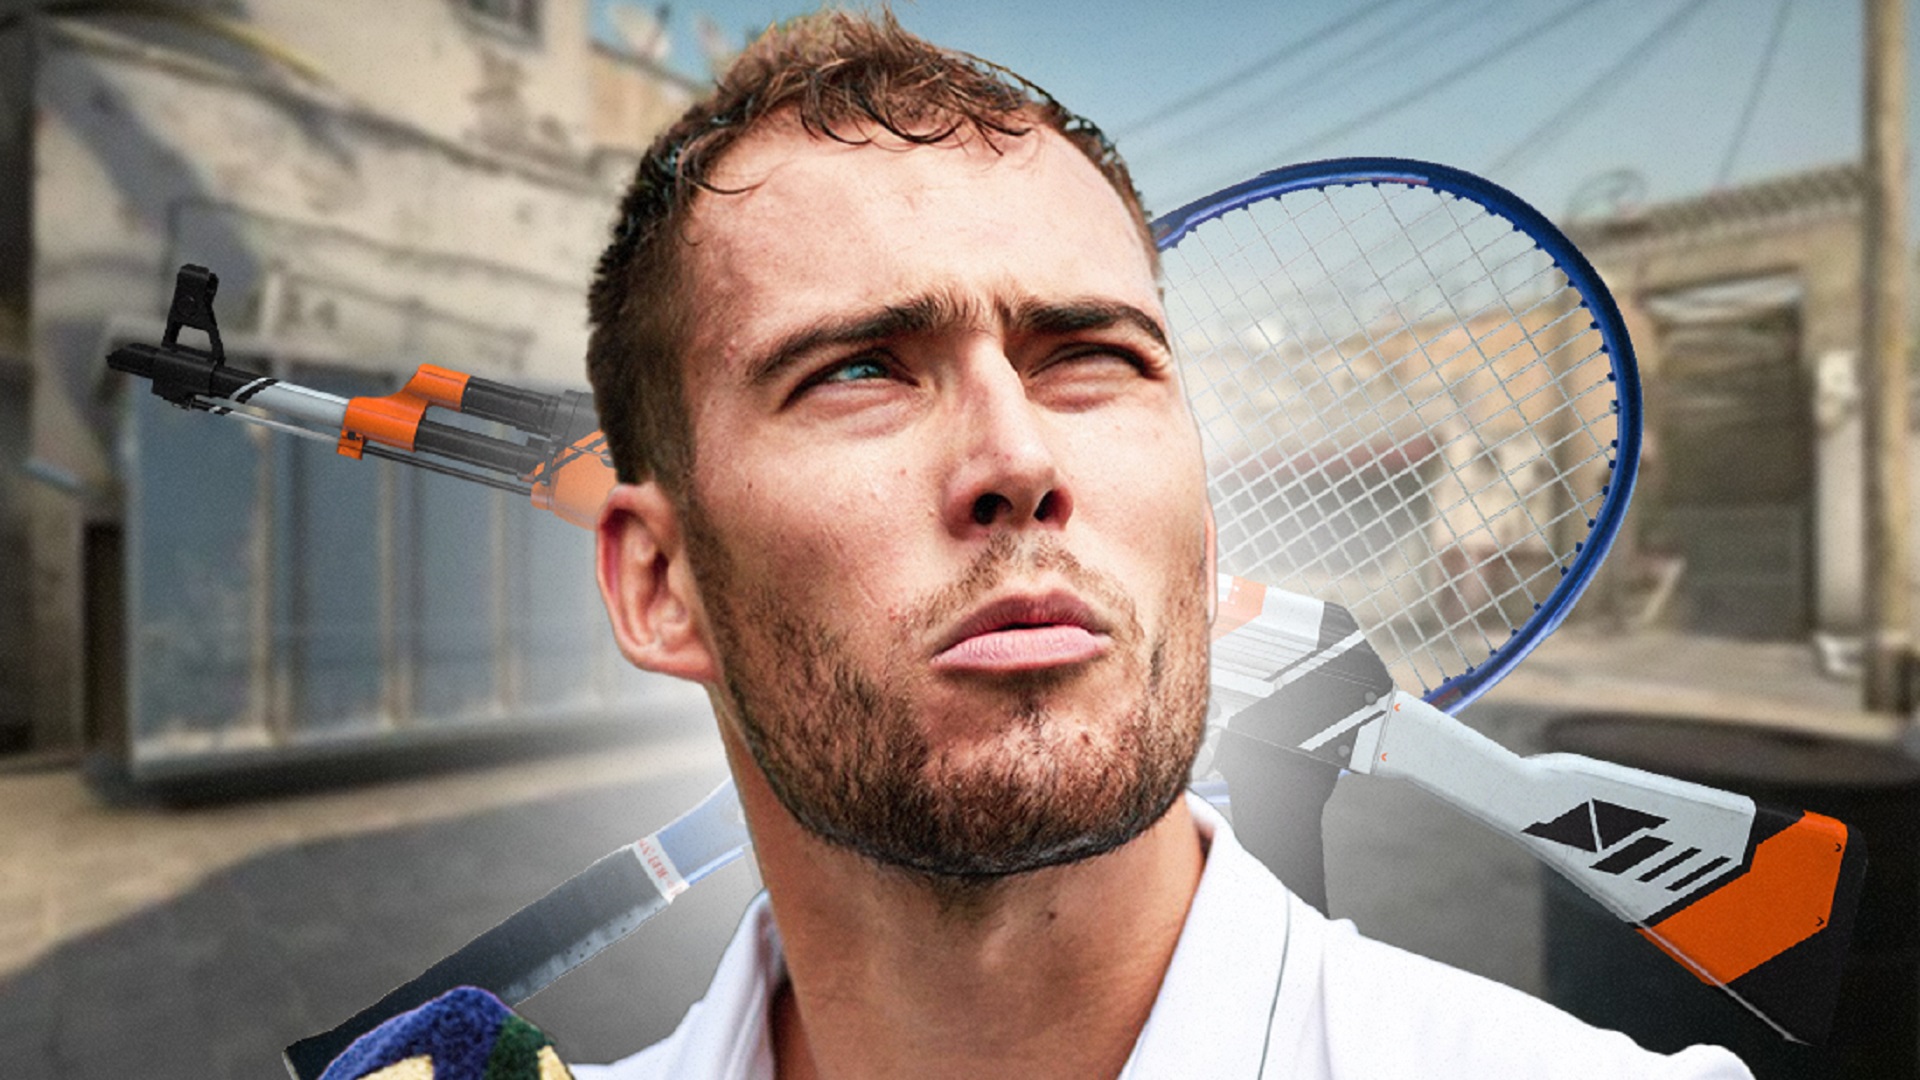 Ежи Янович – теннисист и ярый фанат Counter-Strike. Стримы, инвентарь на 10 тысяч долларов и рейджи